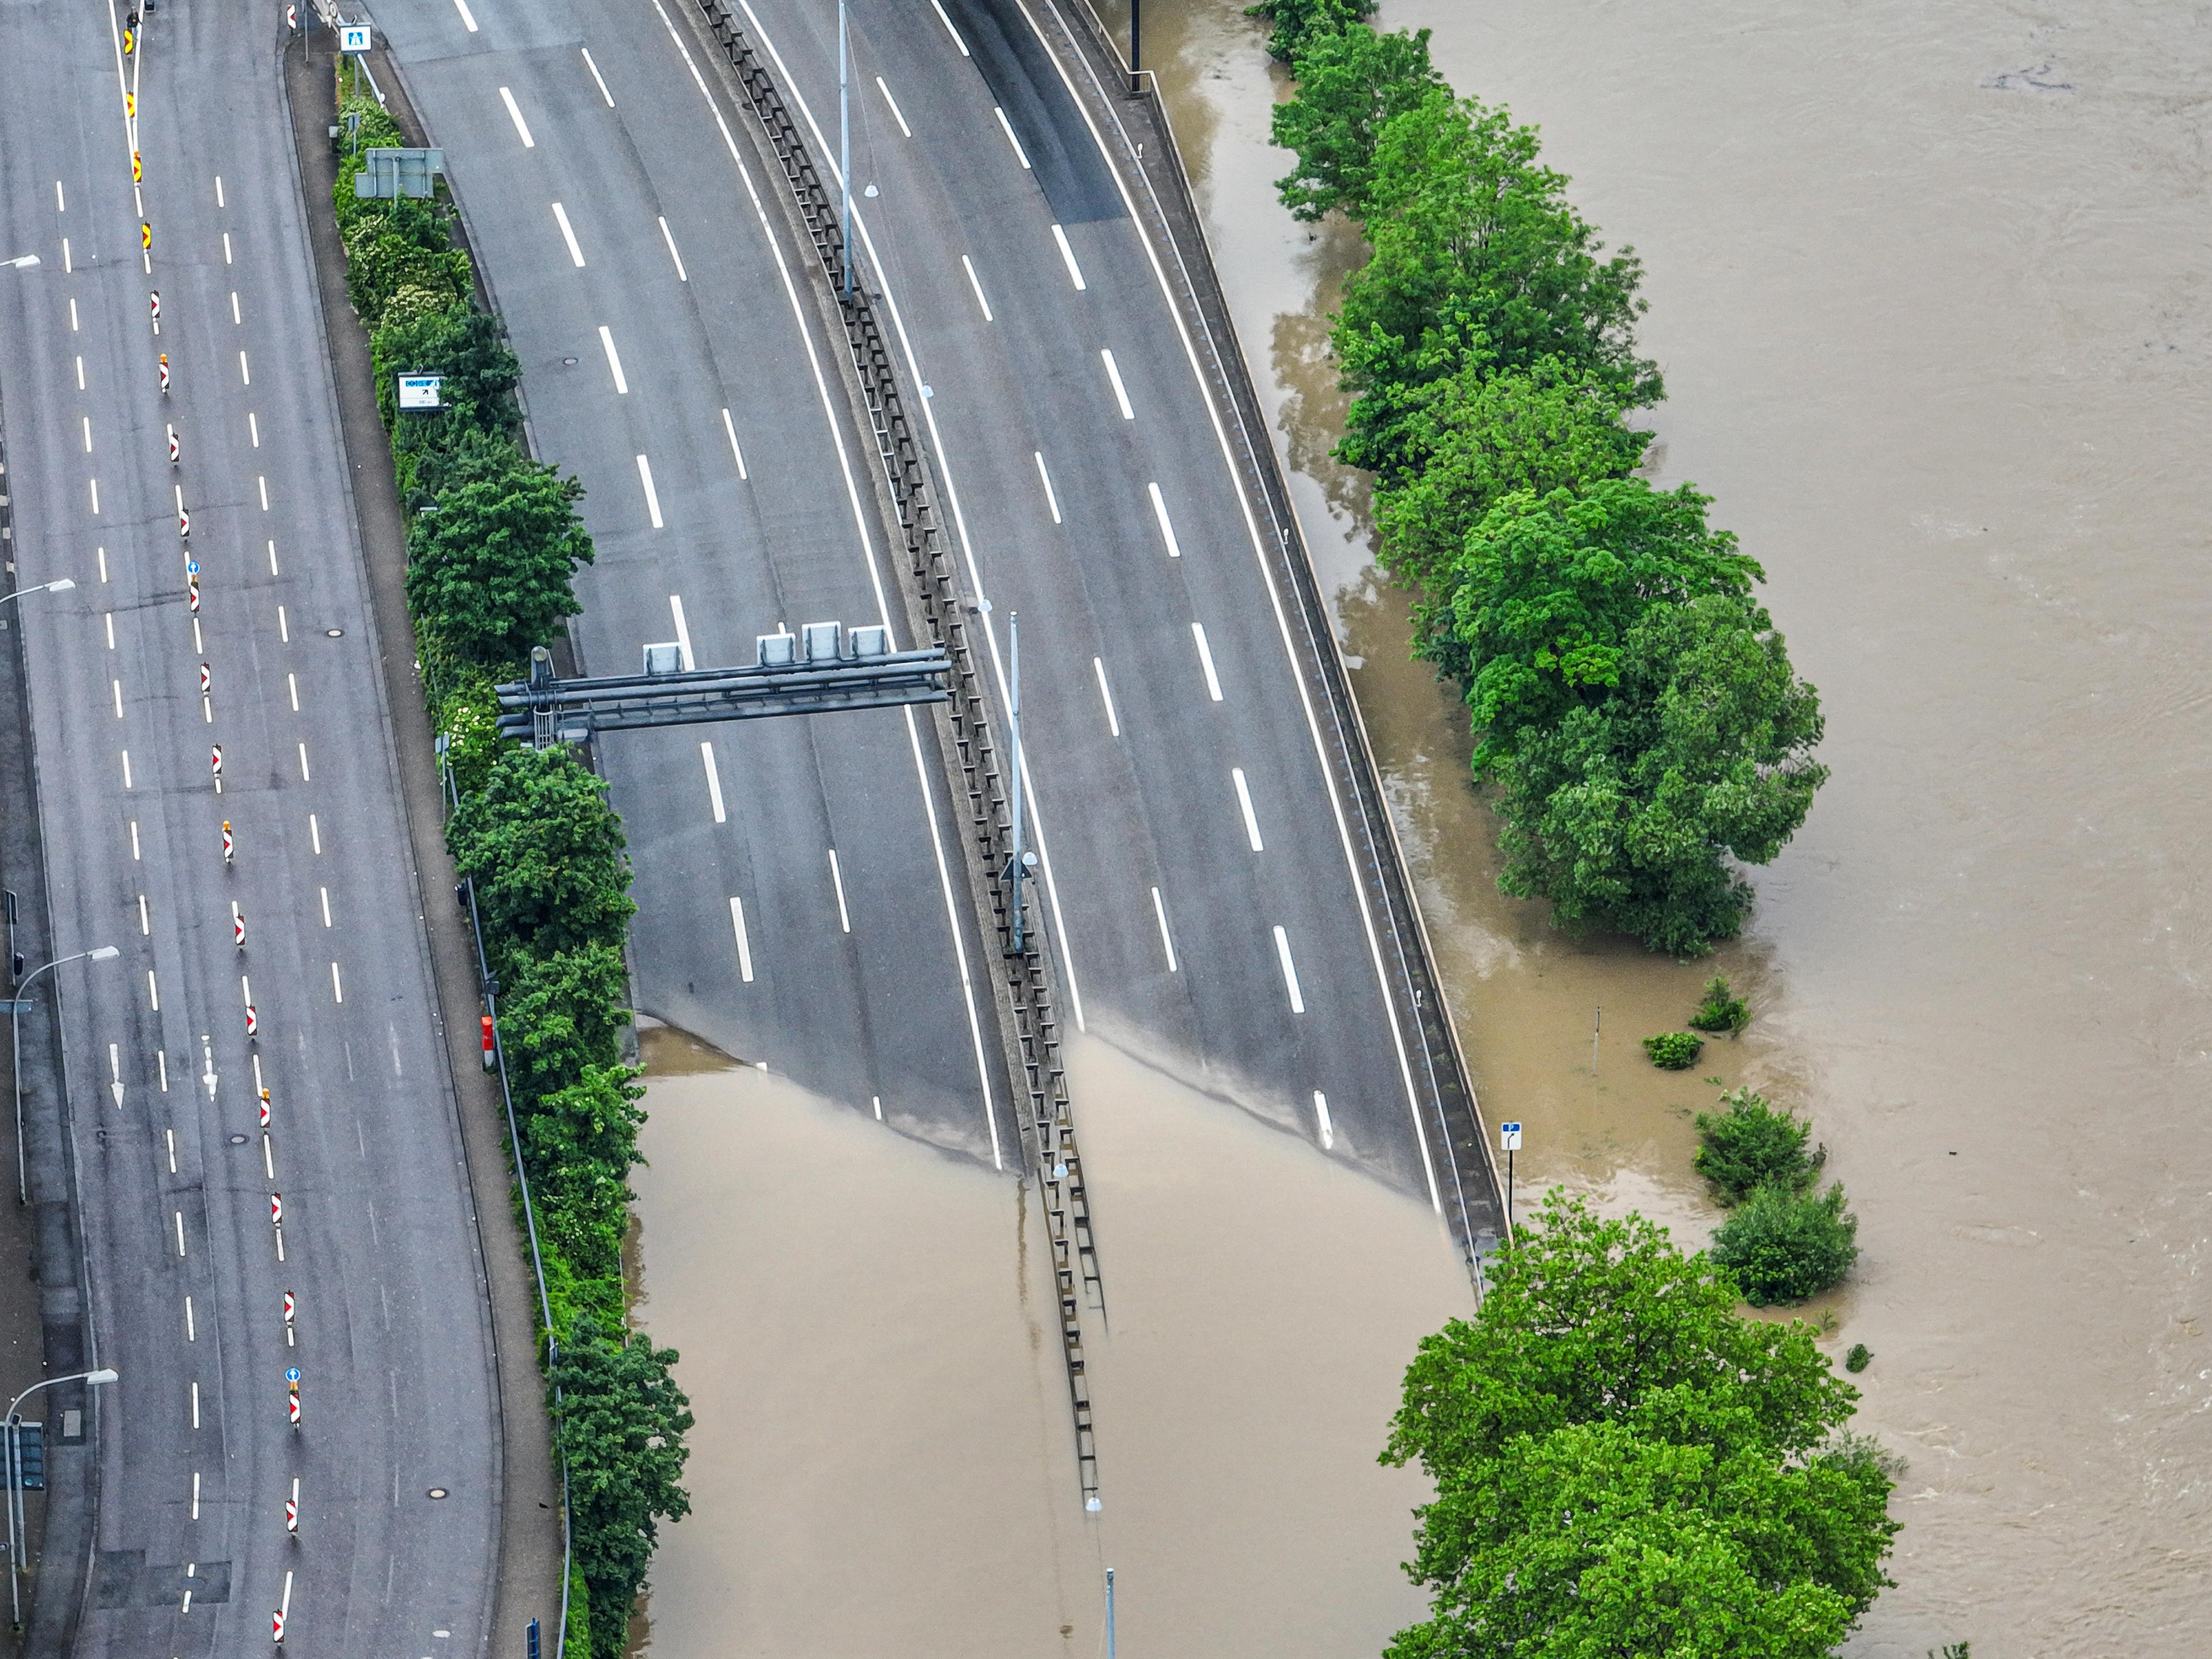 Påfarten till motorvägen A620 i Saarbrücken ligger under vatten. Foto: Laszlo Pinter/DPA/AP/TT